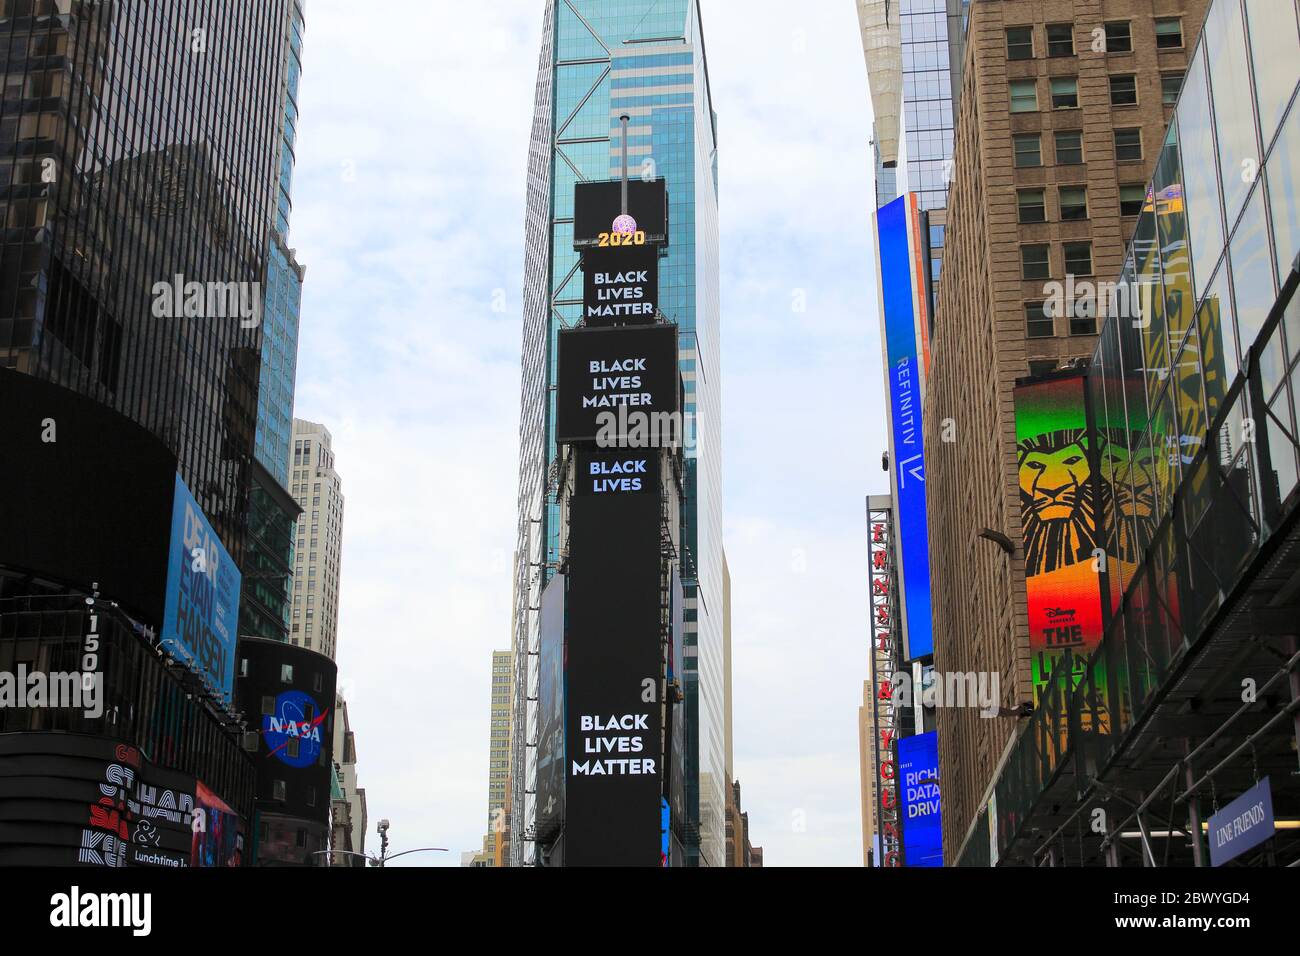 Black Lives materia cartellone in Times Square. La morte di George Floyd mentre era sotto la custodia della polizia di Minneapolis ha scatenato proteste a livello nazionale in tutto gli Stati Uniti chiedendo giustizia e cambiamento sociale. 1 Times Square, Manhattan, New York City USA. 2 giugno 2020 Foto Stock